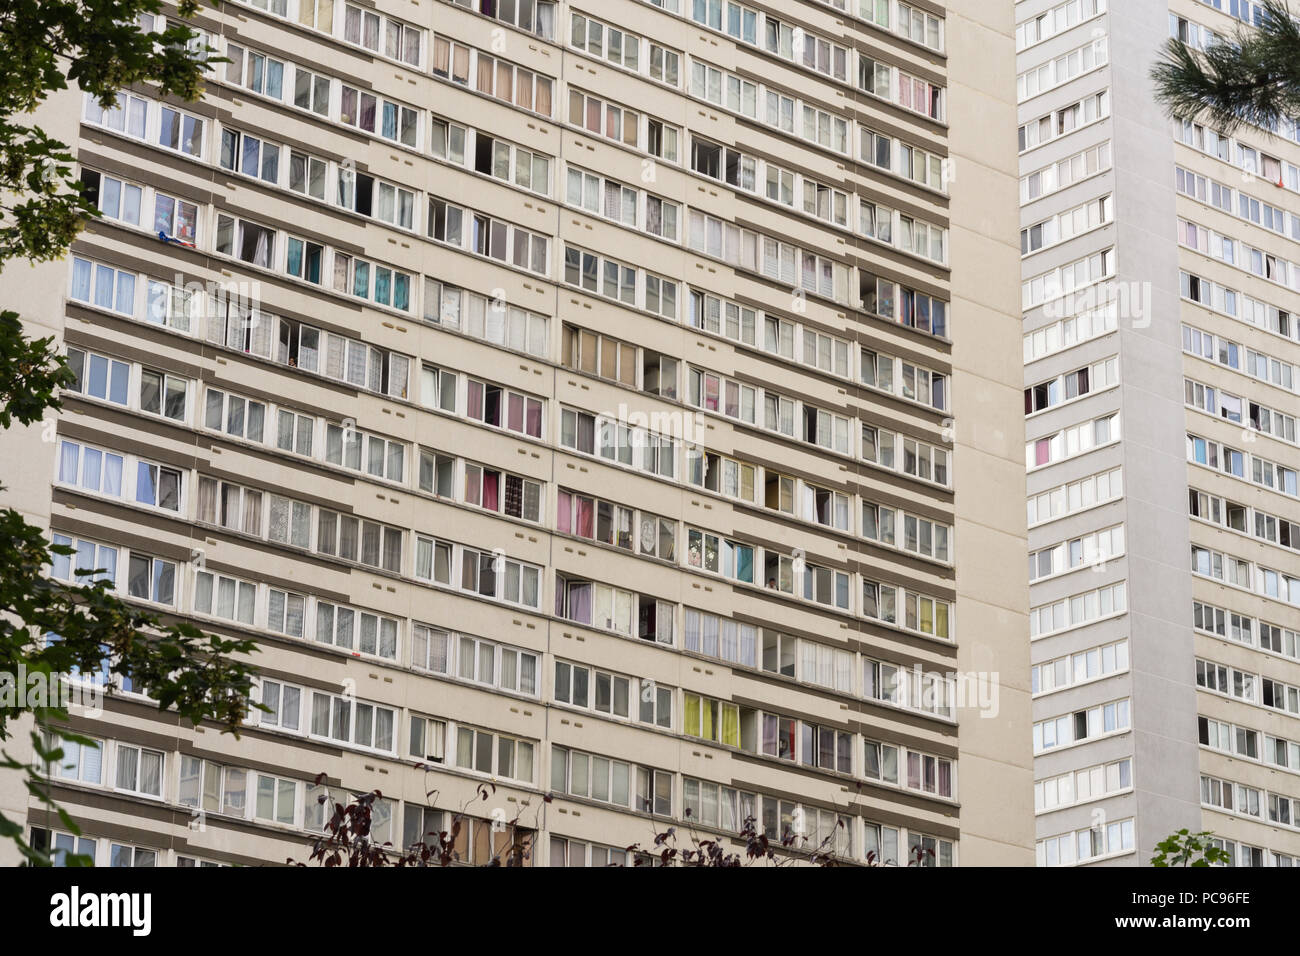 Paris Vororte - Wohngebäude, Teil des Olympiades Bezirk im 13. arrondissement von Paris, Frankreich, Europa. Stockfoto